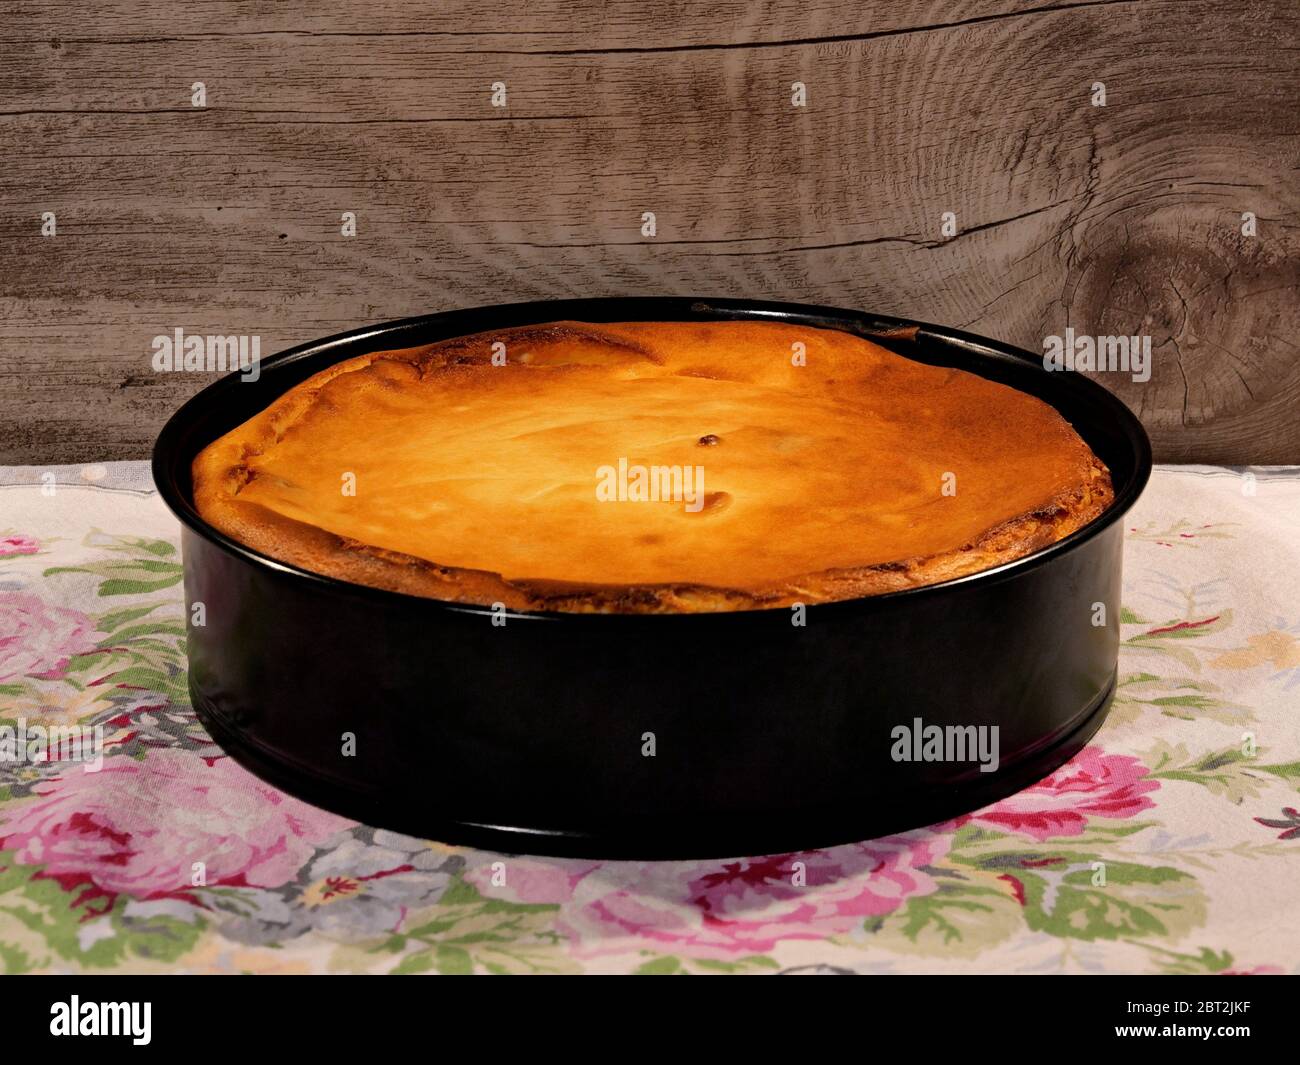 La cheesecake della nonna, appena sfornata, ancora in teglia, su un tovaglia, su sfondo di legno. Foto Stock